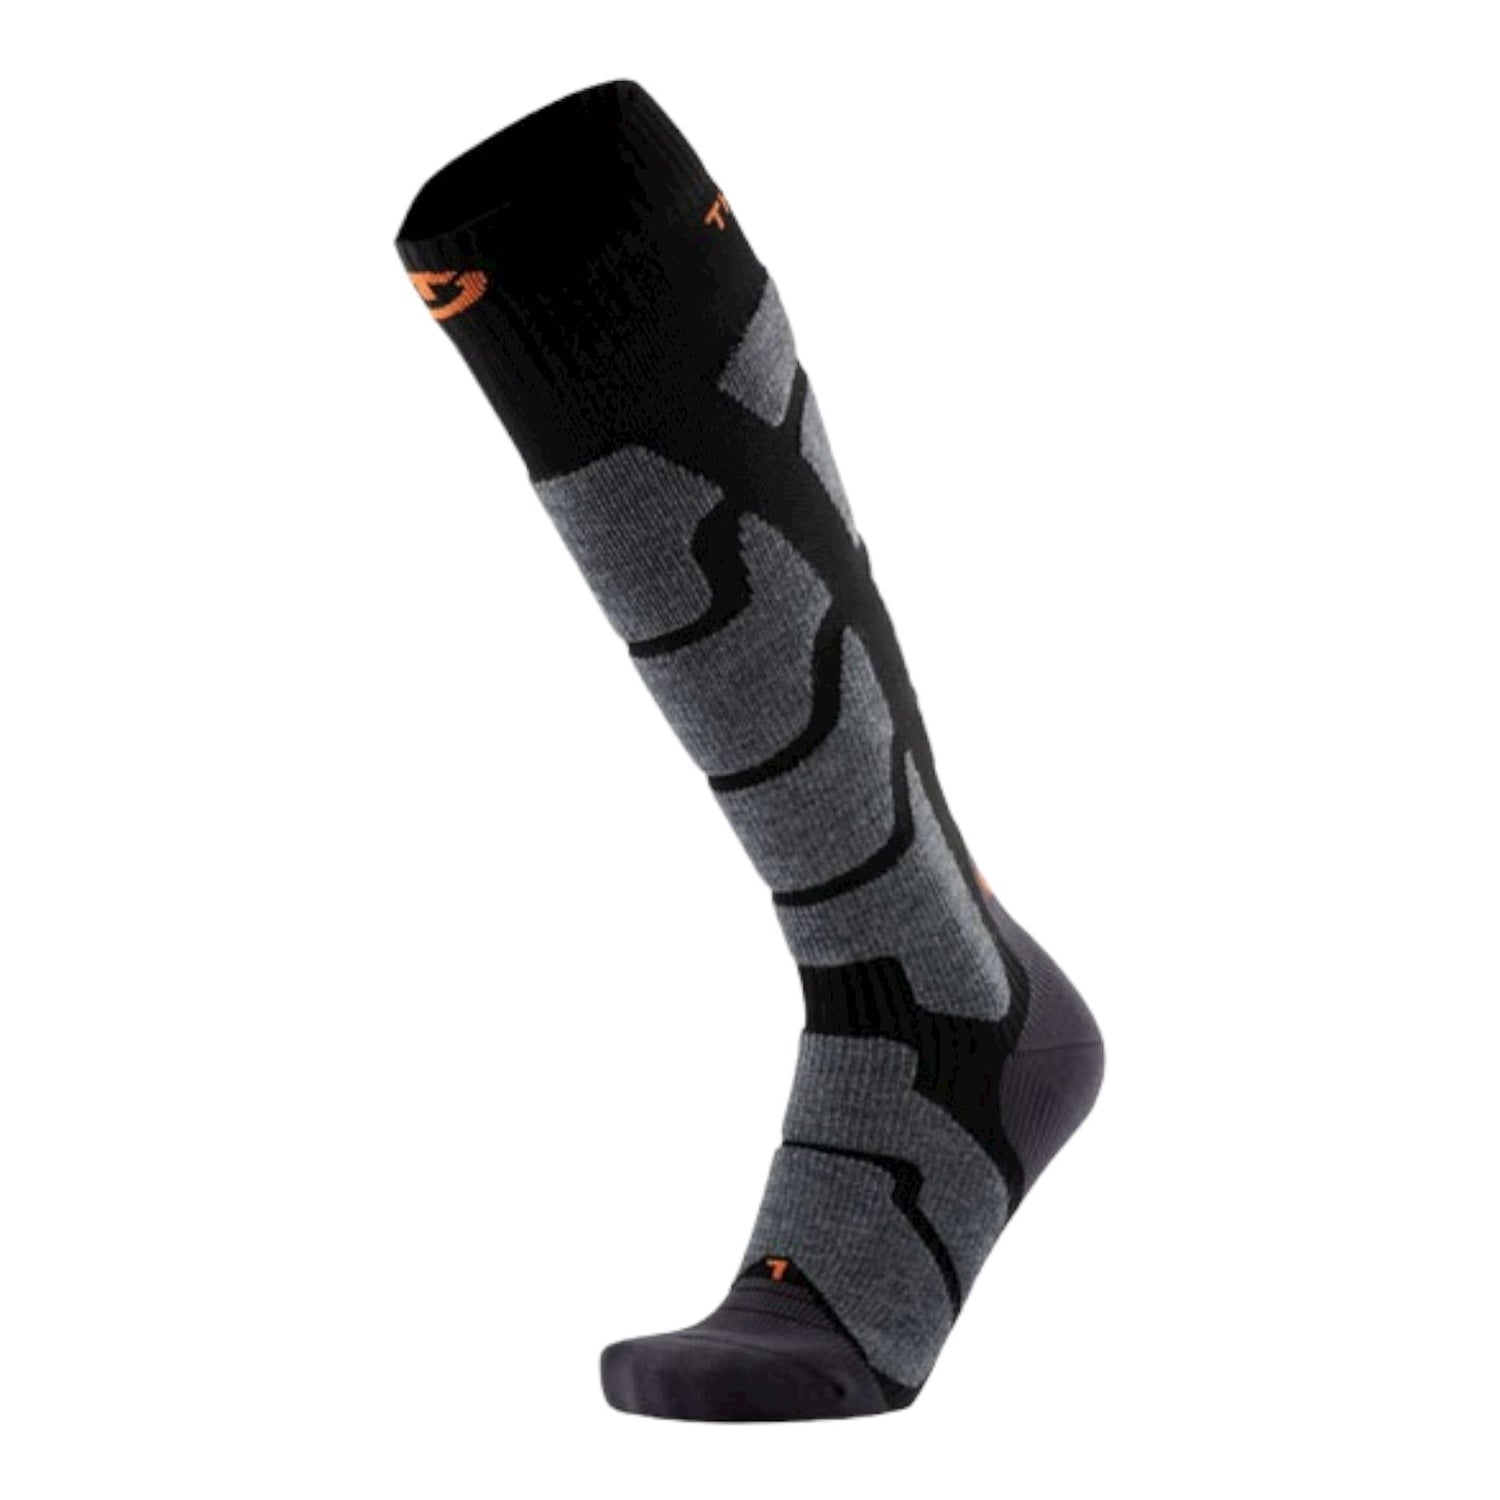 X-Socks Skicontrol 2.0 LD, chaussette de ski pour femmes.